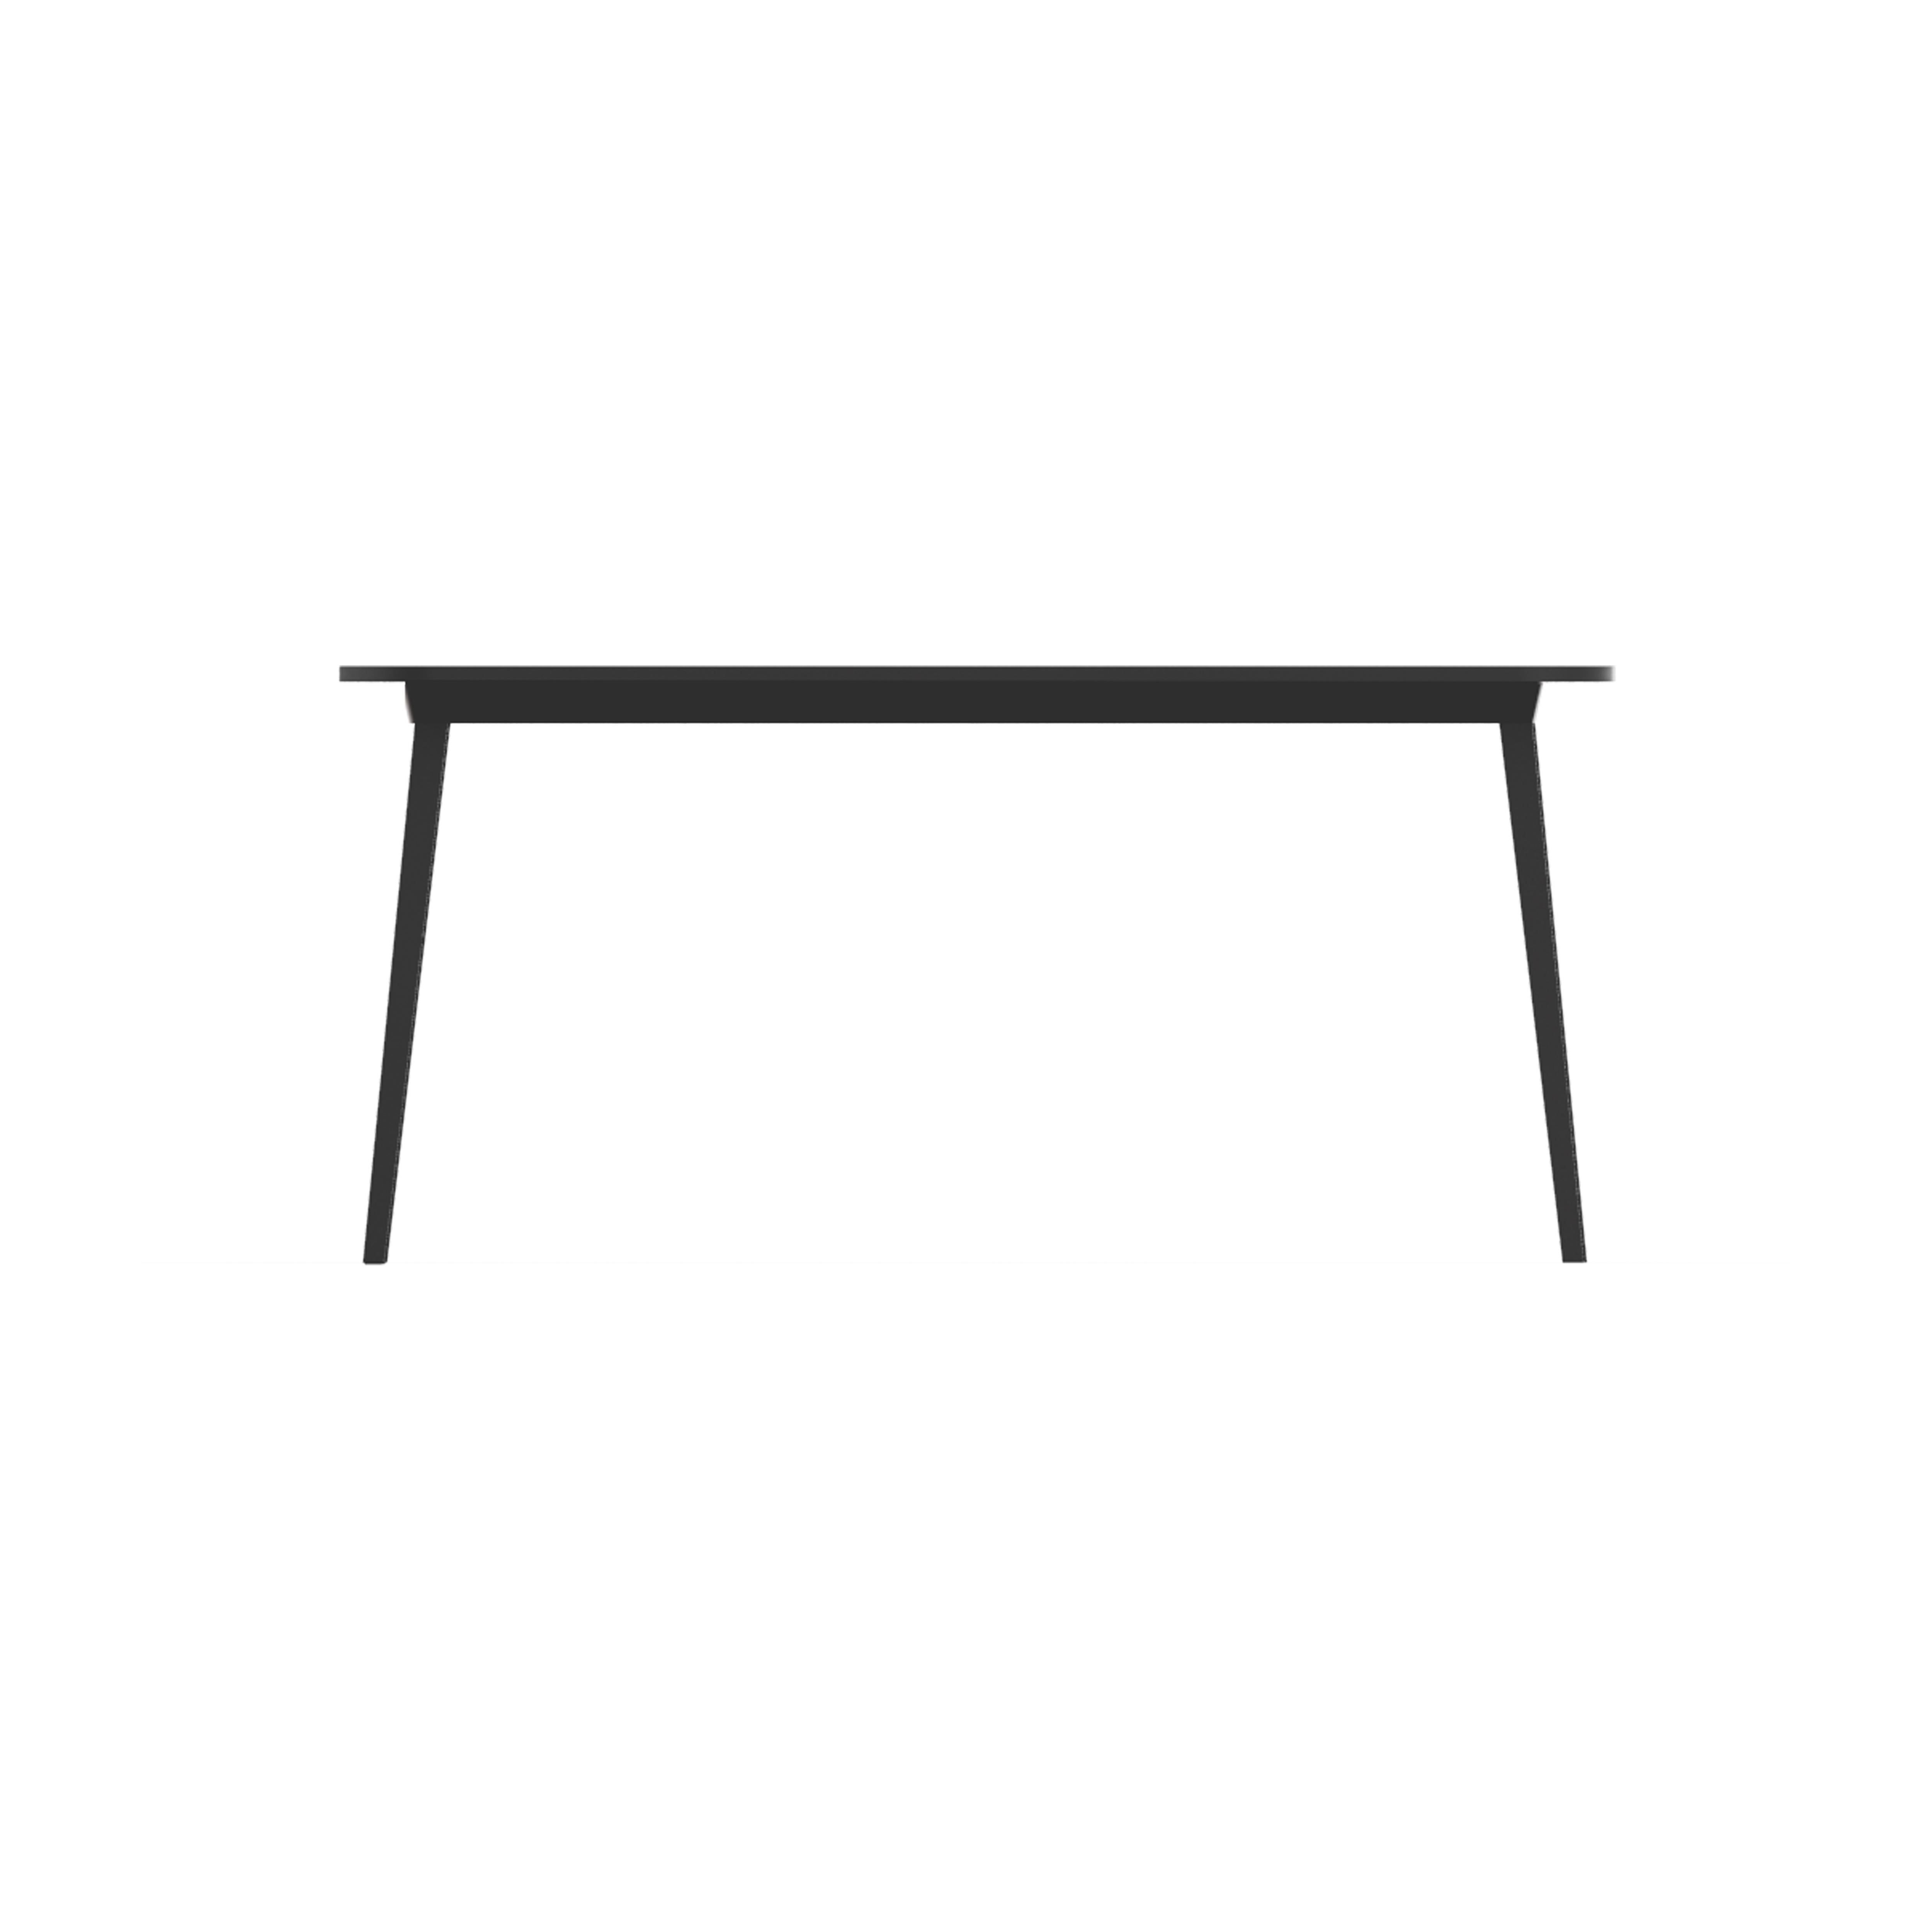 X ist eine Familie von Tischen in verschiedenen Größen, die aus einer ausziehbaren Aluminiumstruktur mit Holzplatte oder aus einfarbigem, schwarzem Kunststoff bestehen. Der rechteckige Tisch mit sechs Sitzplätzen ist für ROOMS und häusliche